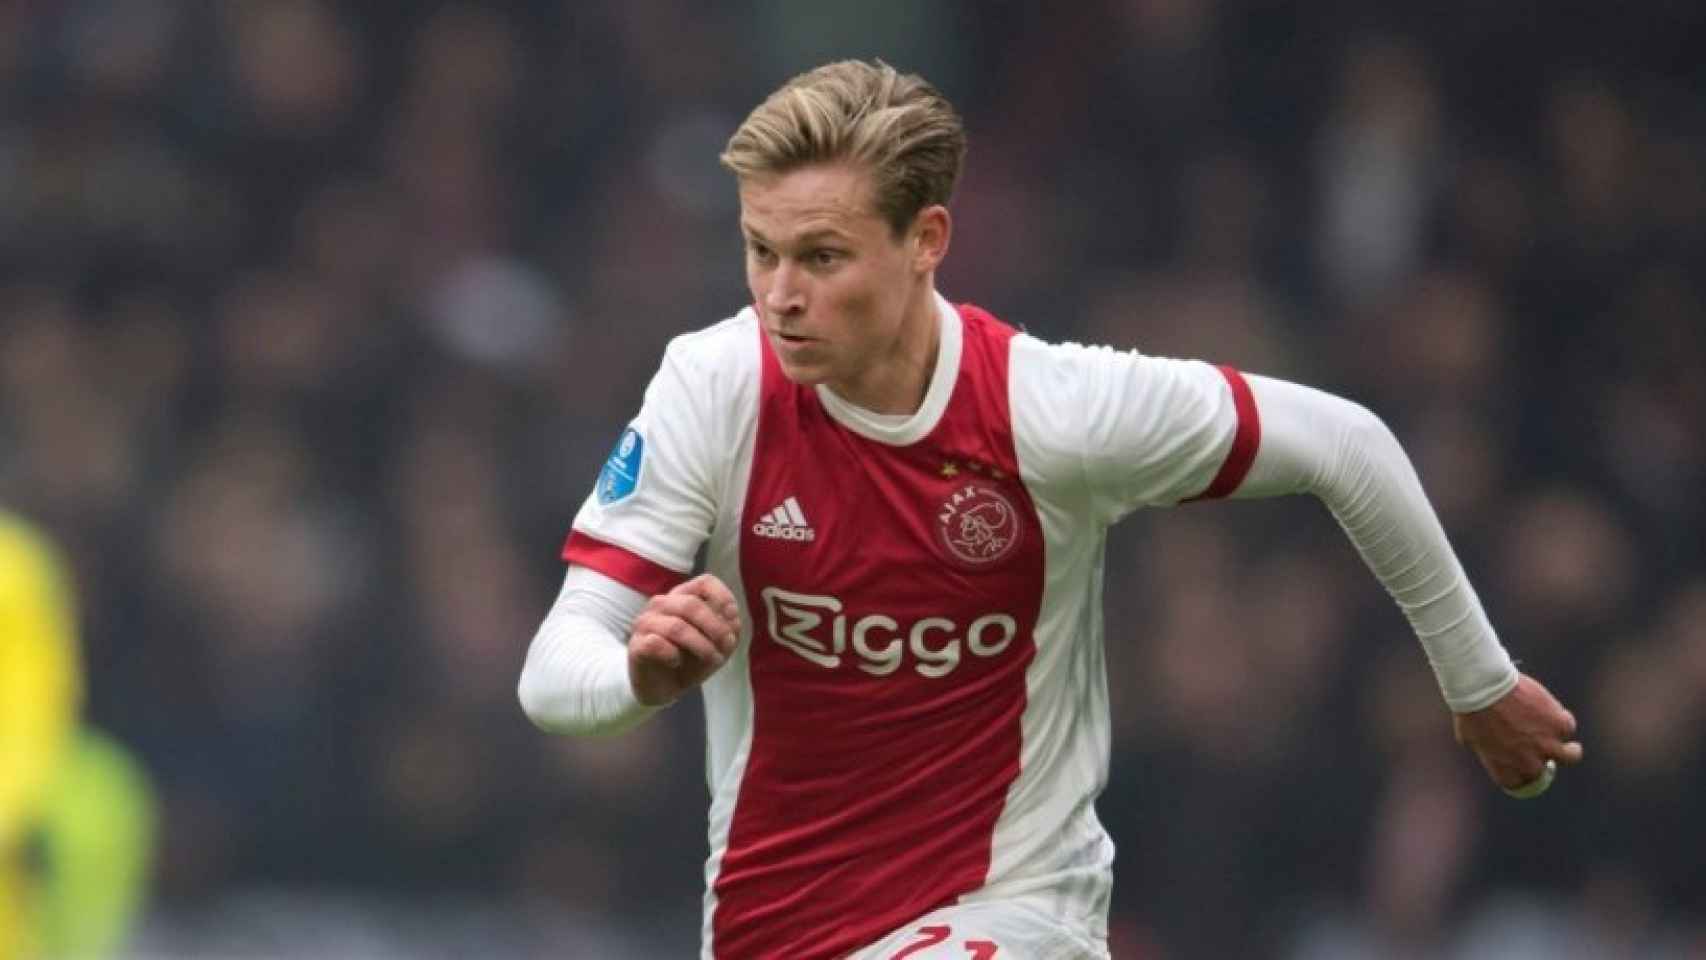 De Jong, jugador del Ajax